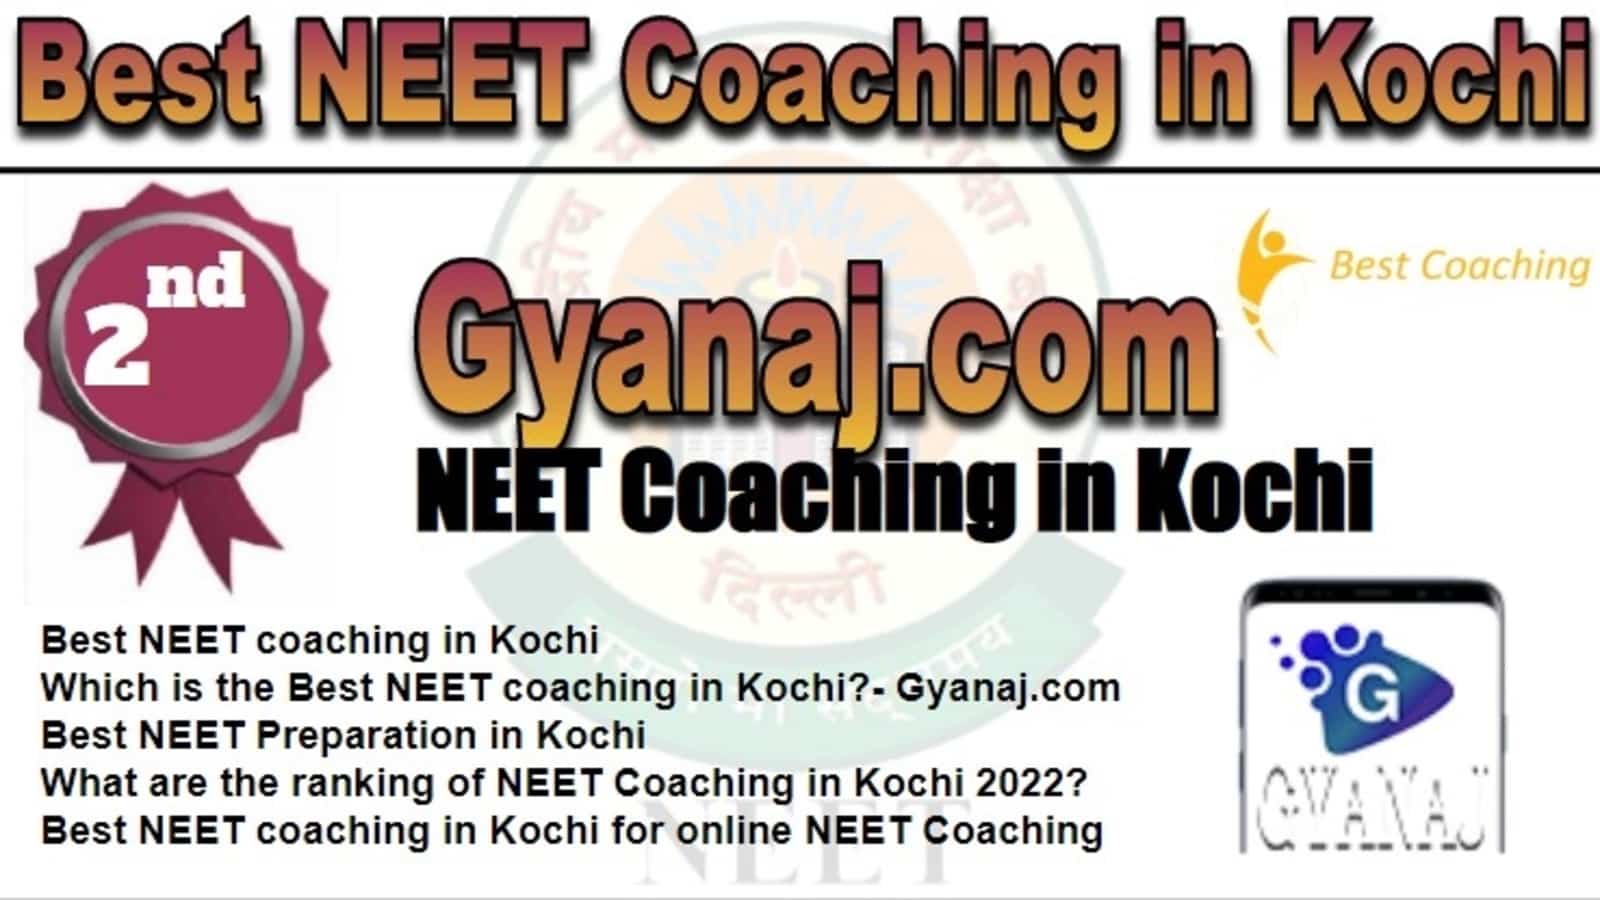 Rank 2 Best NEET Coaching in Kochi